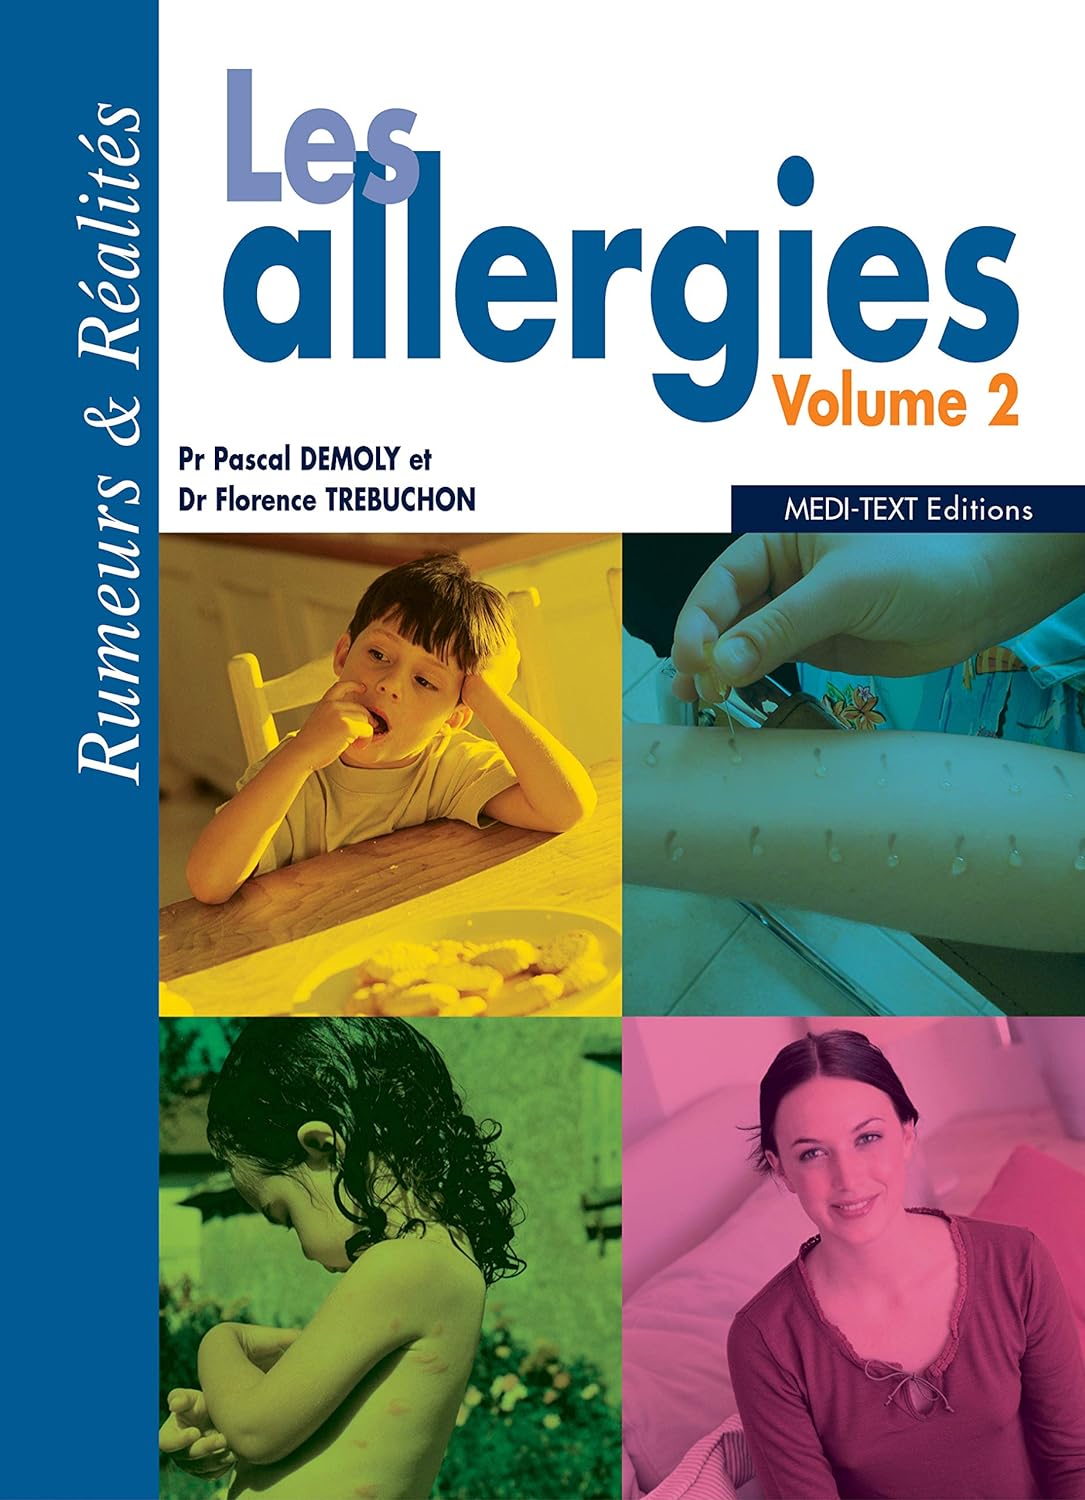 Les allergies volume 2